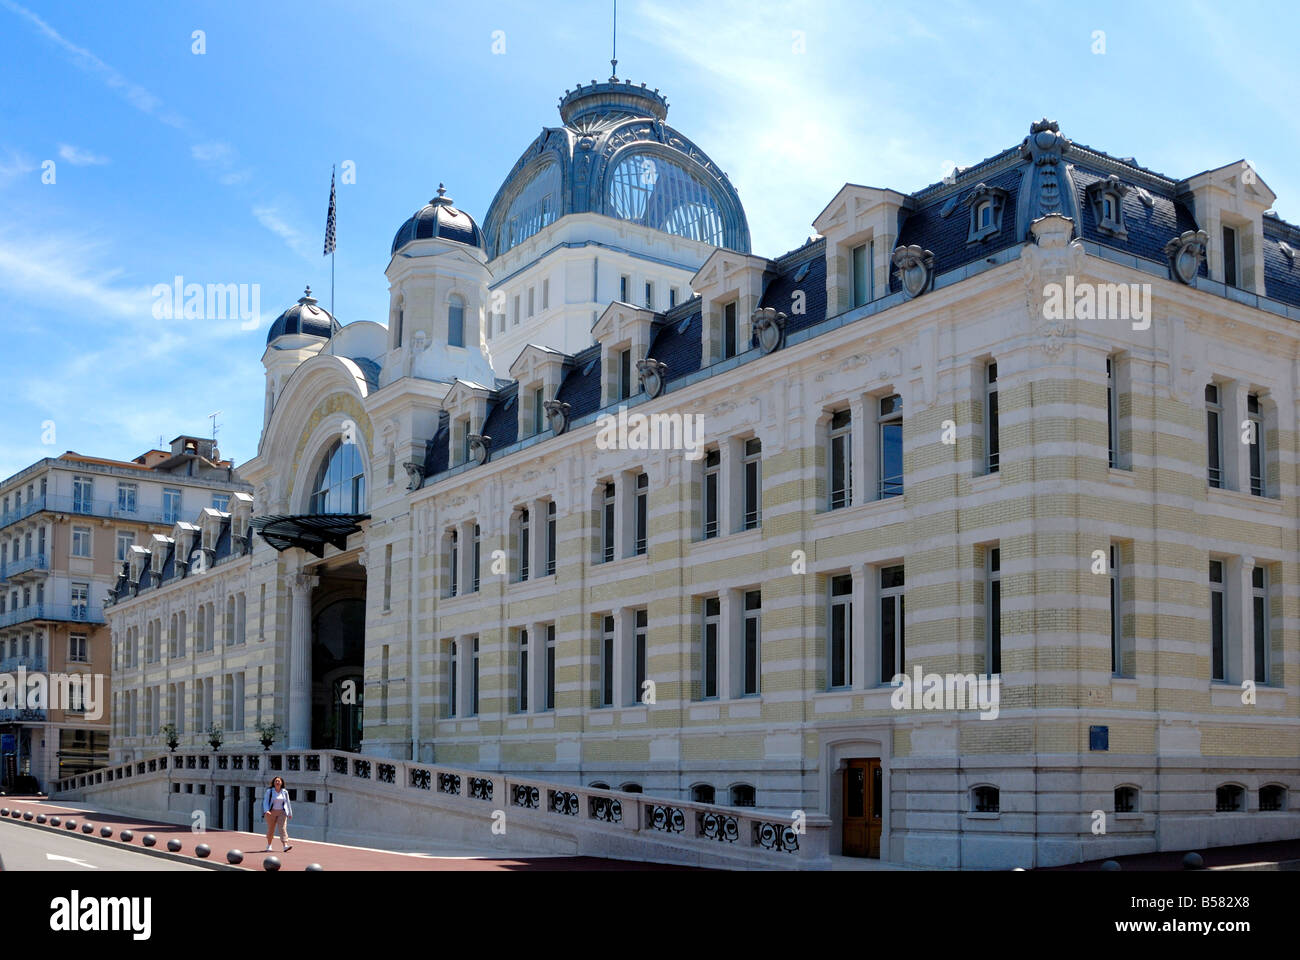 Palais Lumiere, exhibition and congress centre, Evian-les Bains, Haute-Savoie, France, Europe Stock Photo